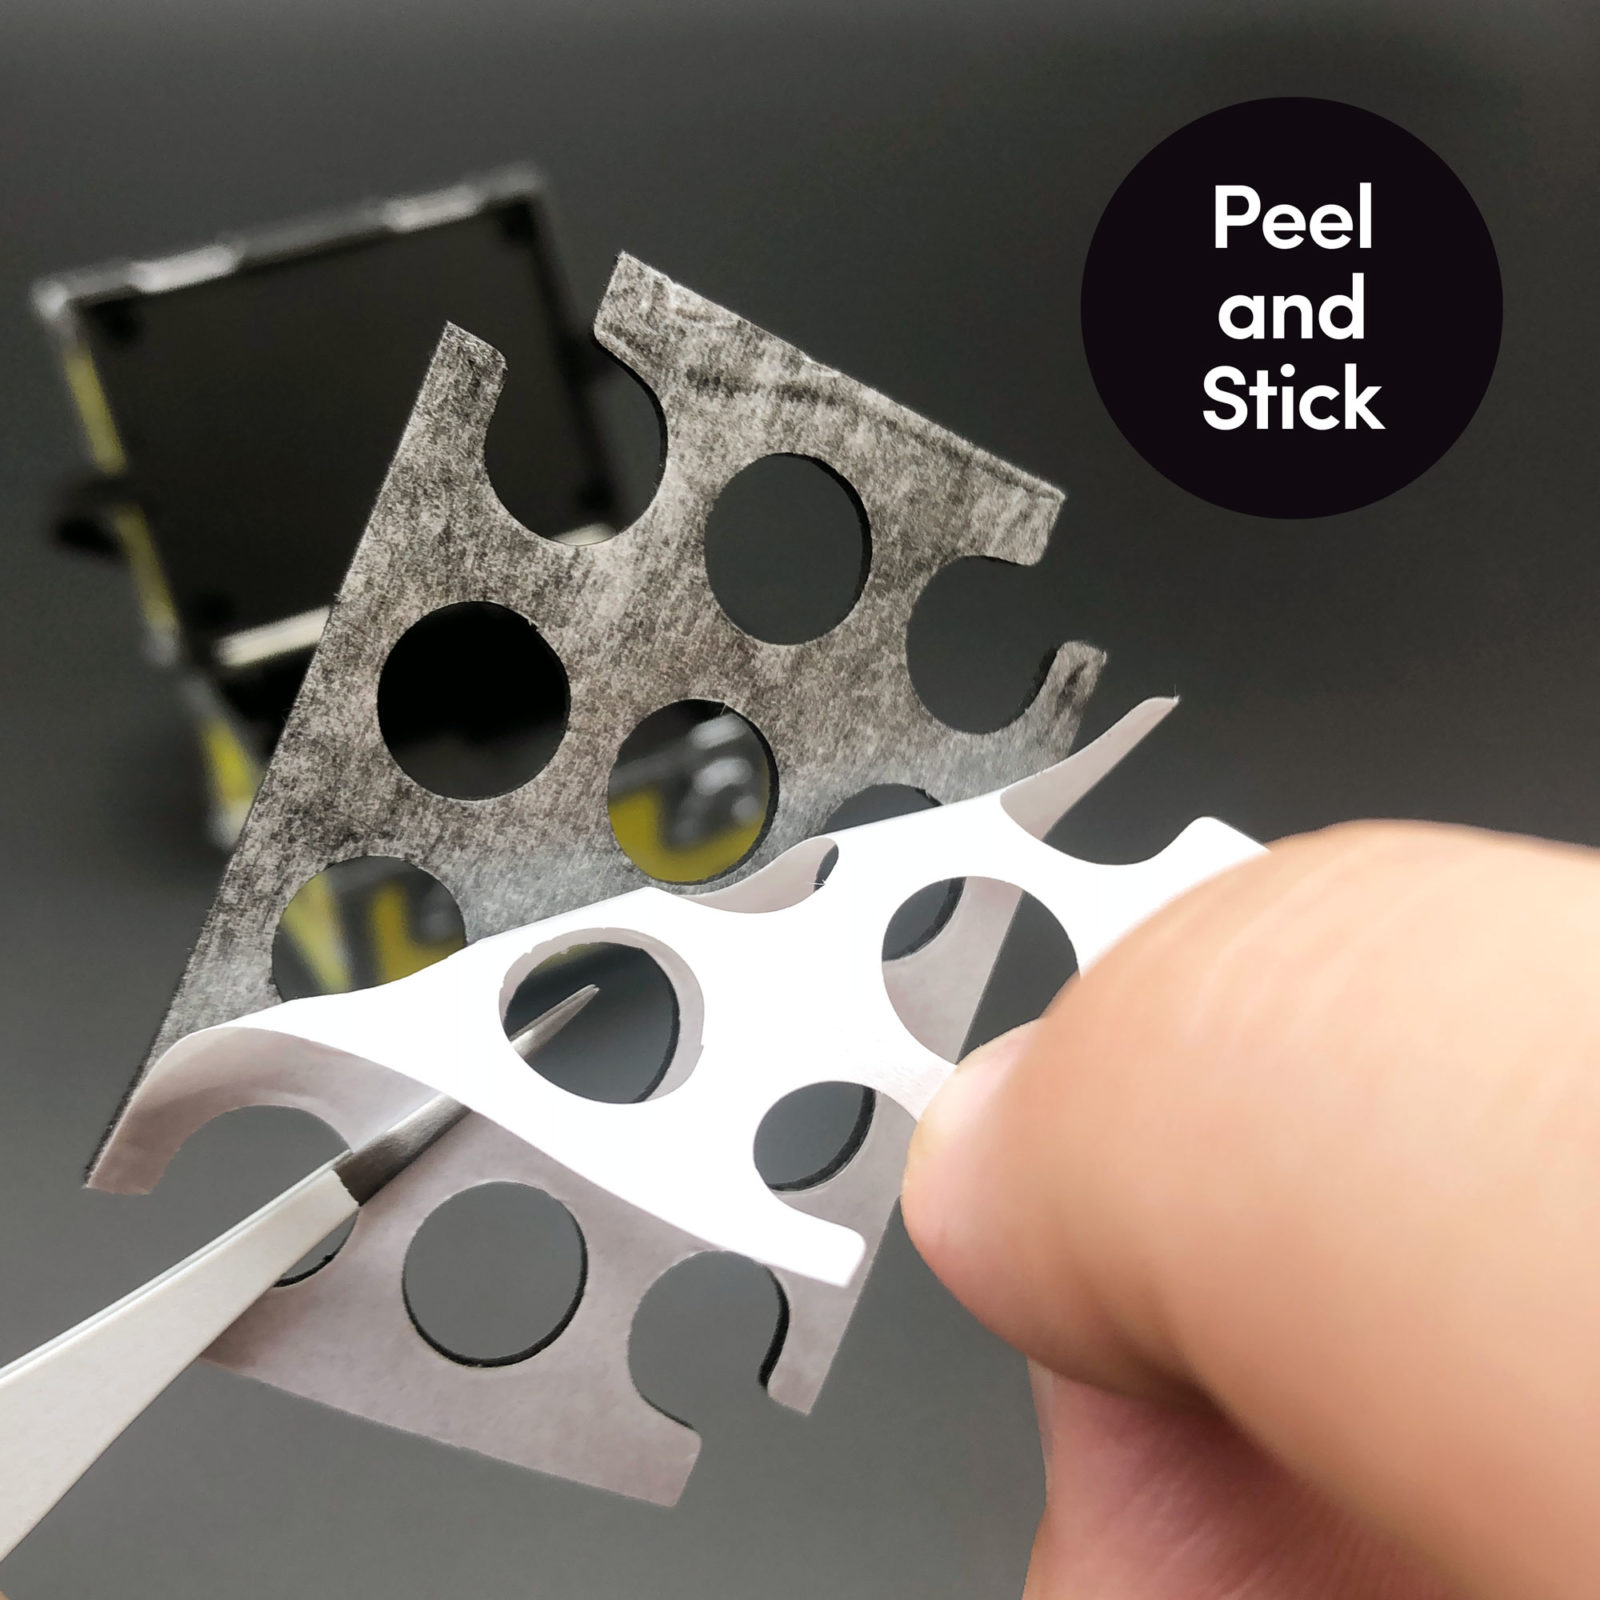 Peel and stick foam inserts for DeLorean Plutonium case